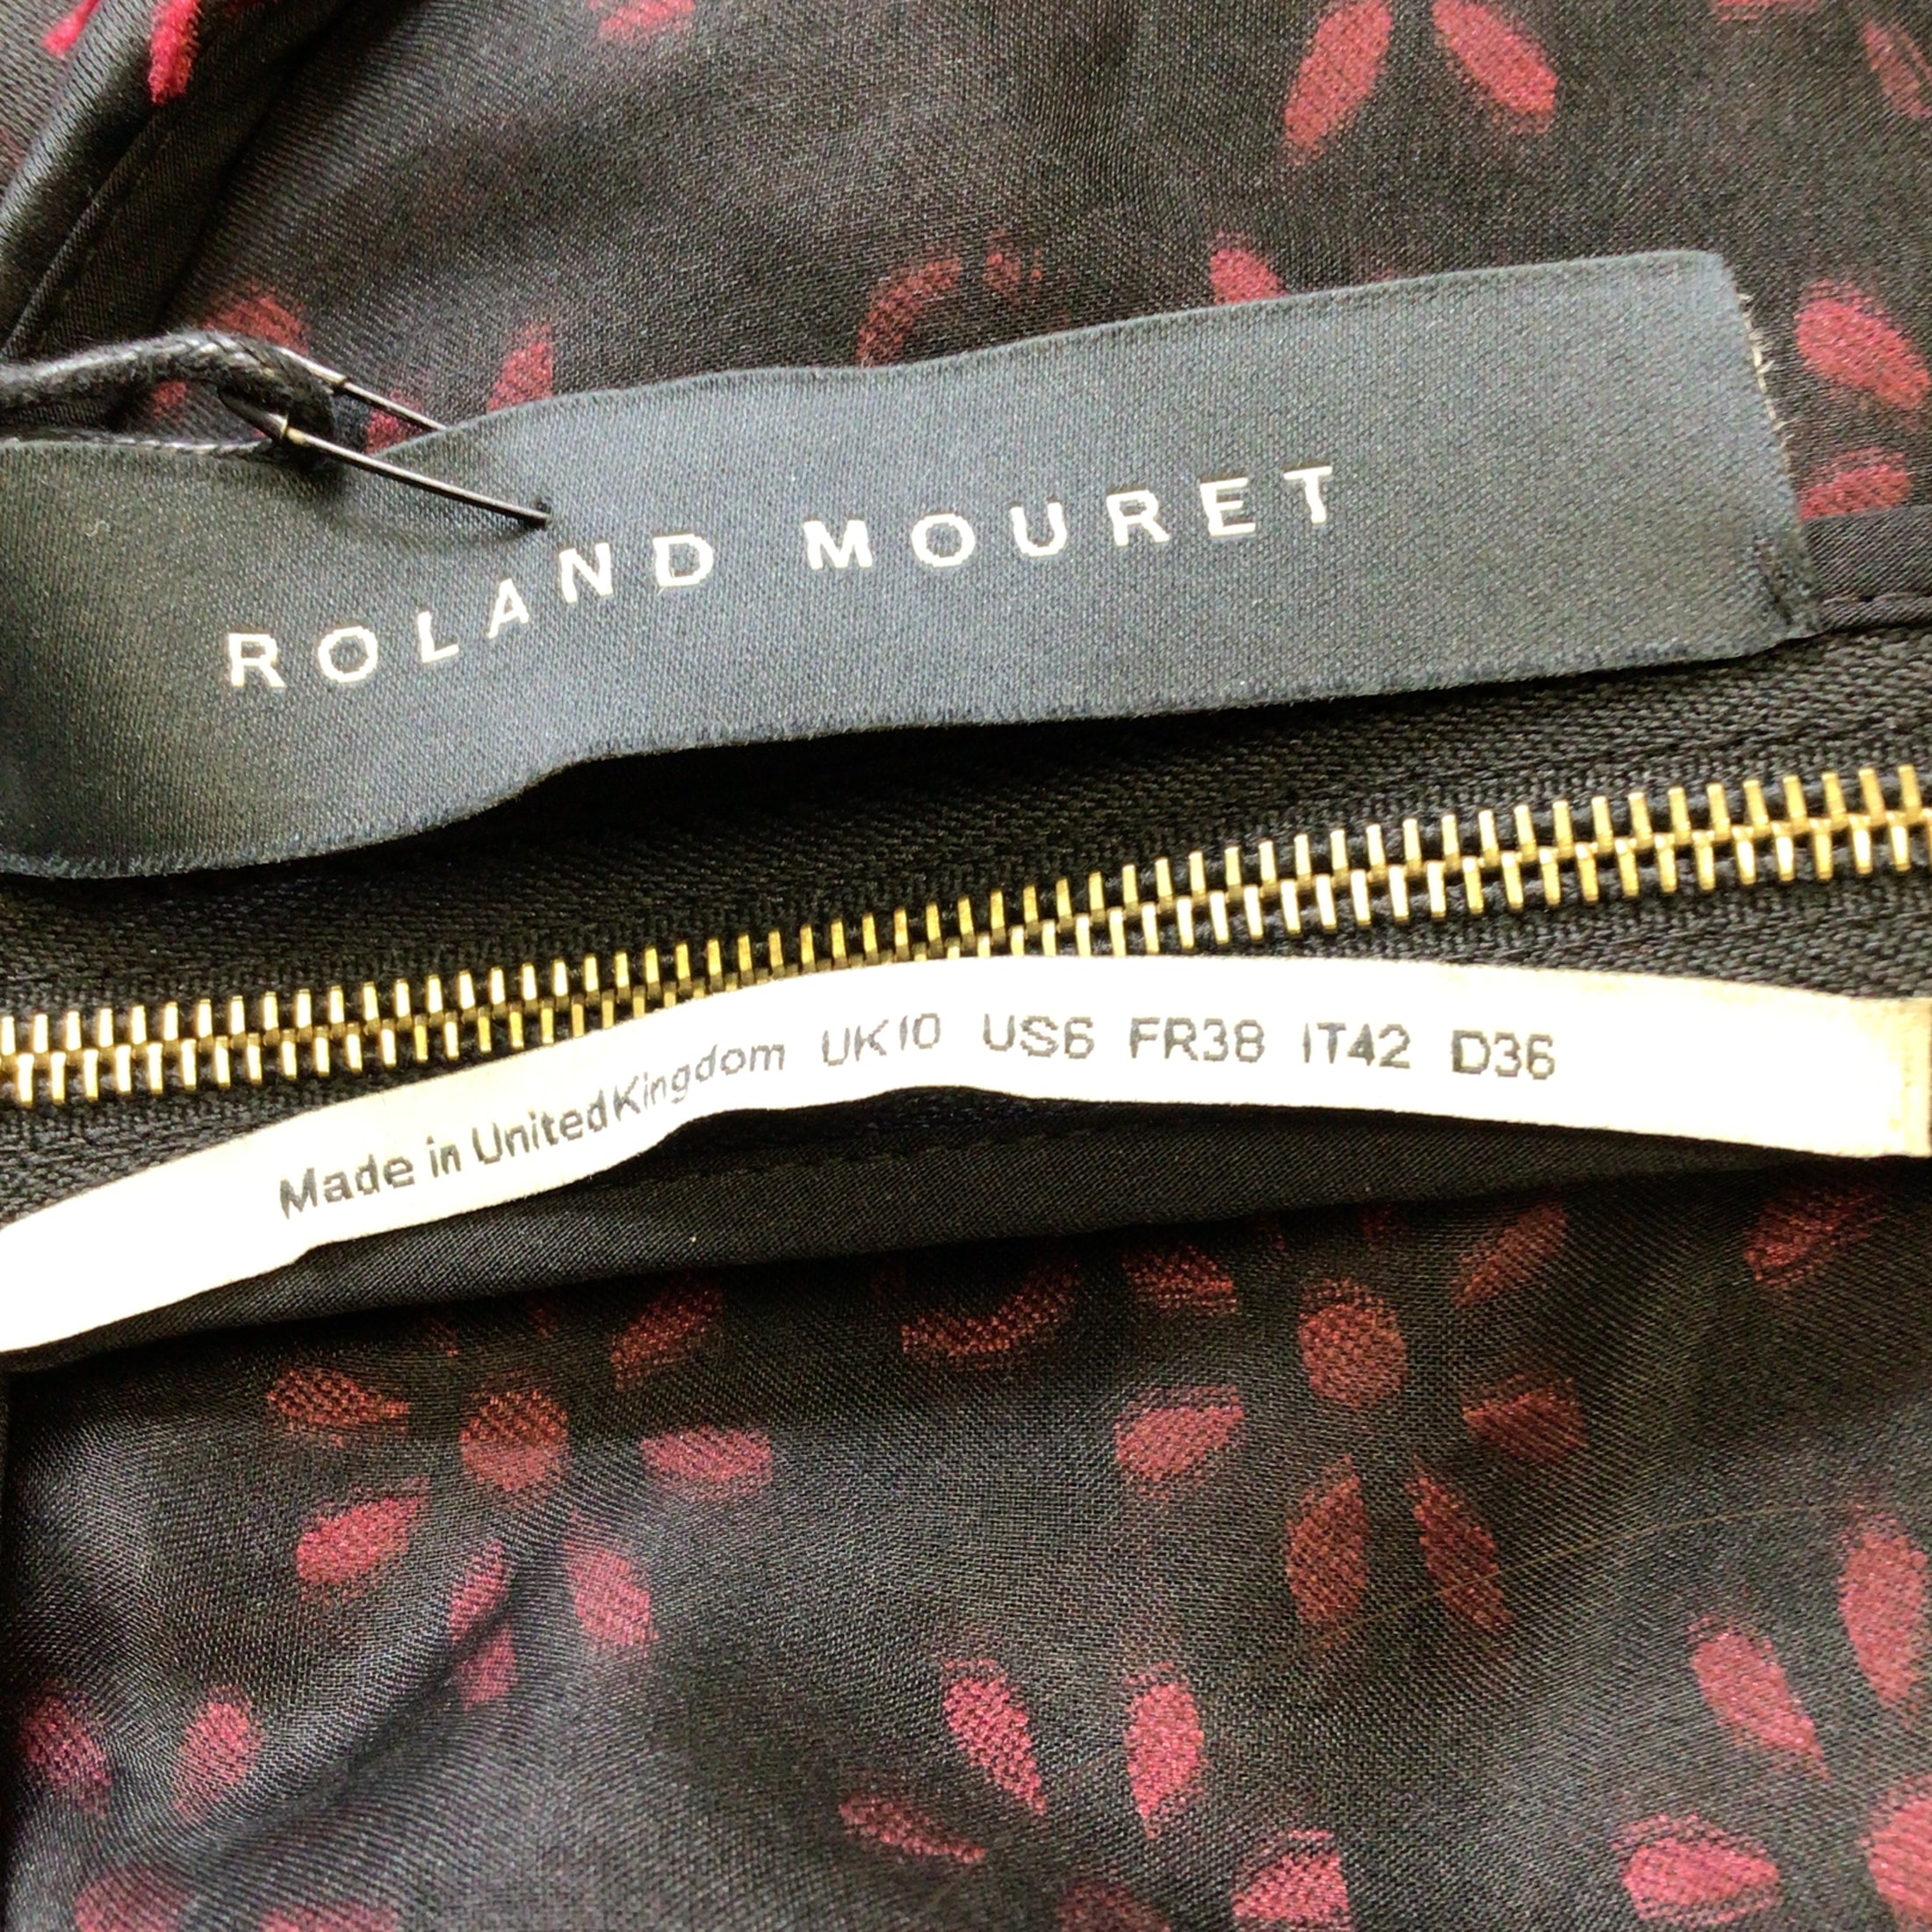 Roland Mouret Claret / Black Meedstead Blossom Fils Coupe Mini Dress